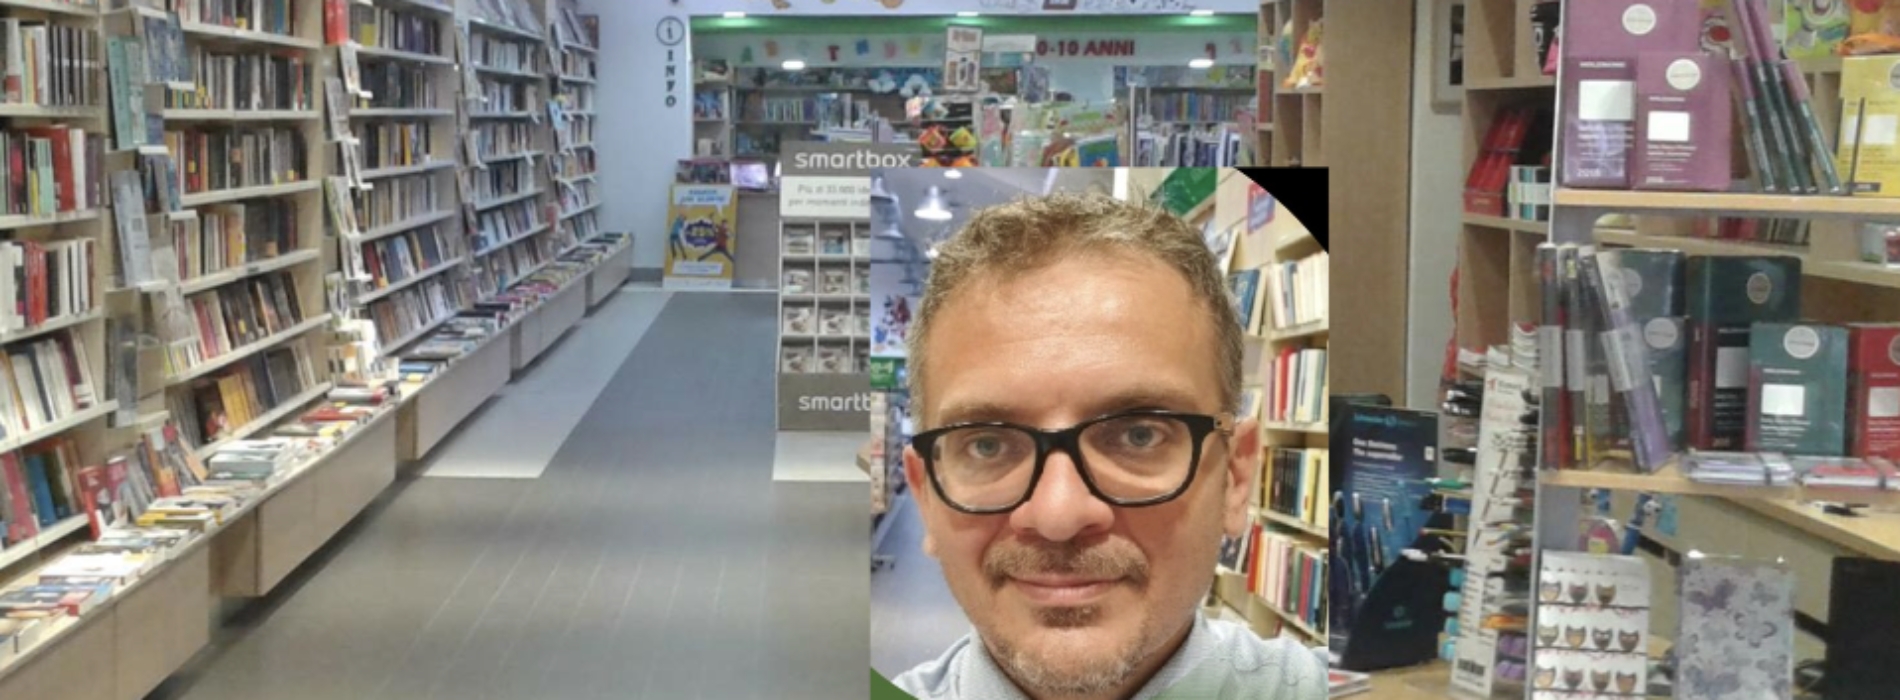 Appuntamenti letterari a Caserta, Pacifico cala il tris di libri